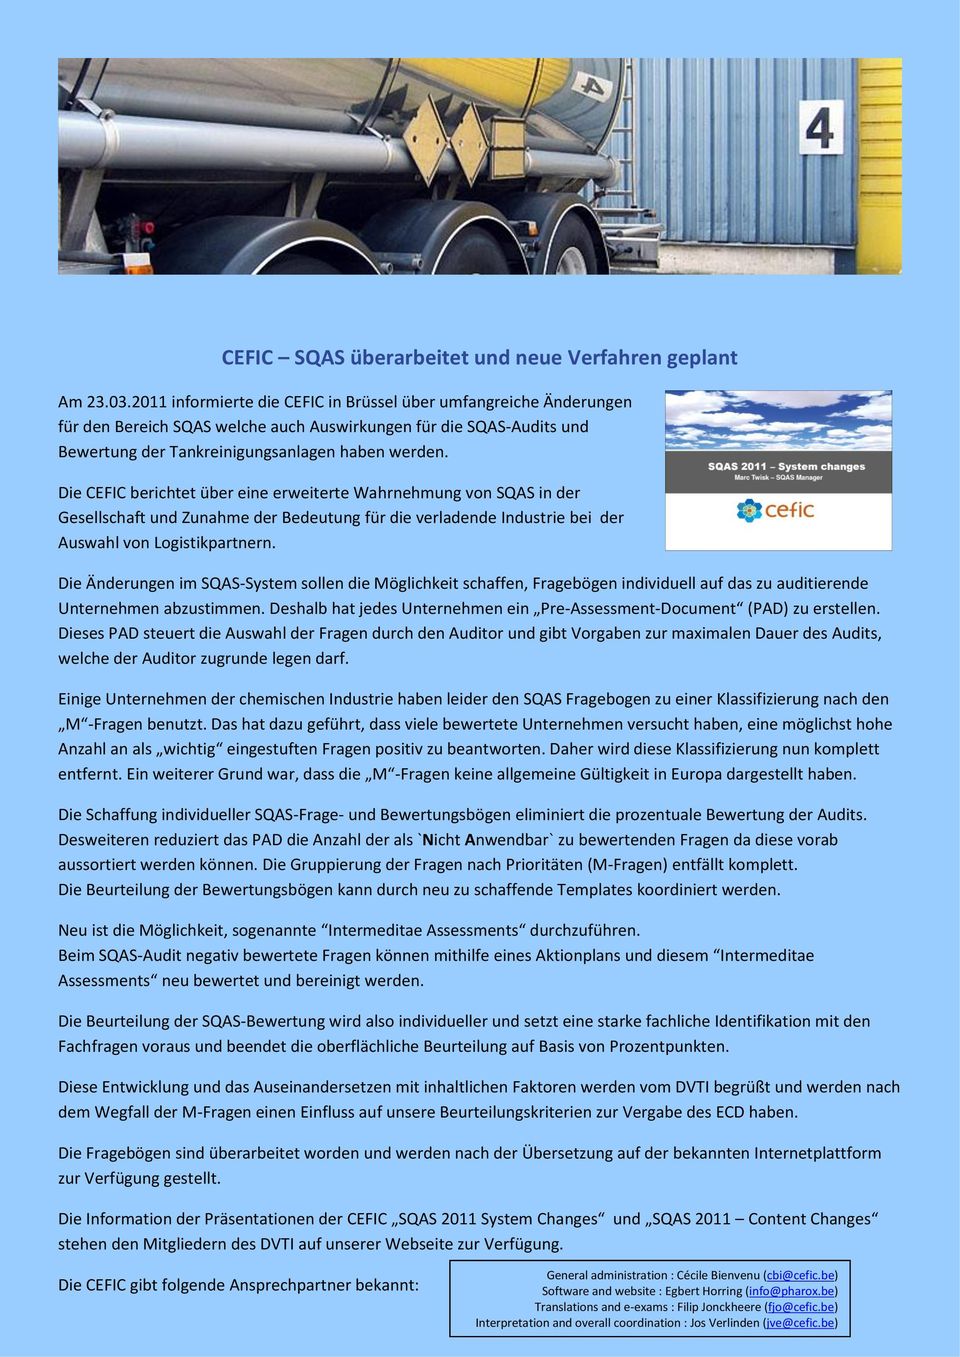 Die CEFIC berichtet über eine erweiterte Wahrnehmung von SQAS in der Gesellschaft und Zunahme der Bedeutung für die verladende Industrie bei der Auswahl von Logistikpartnern.